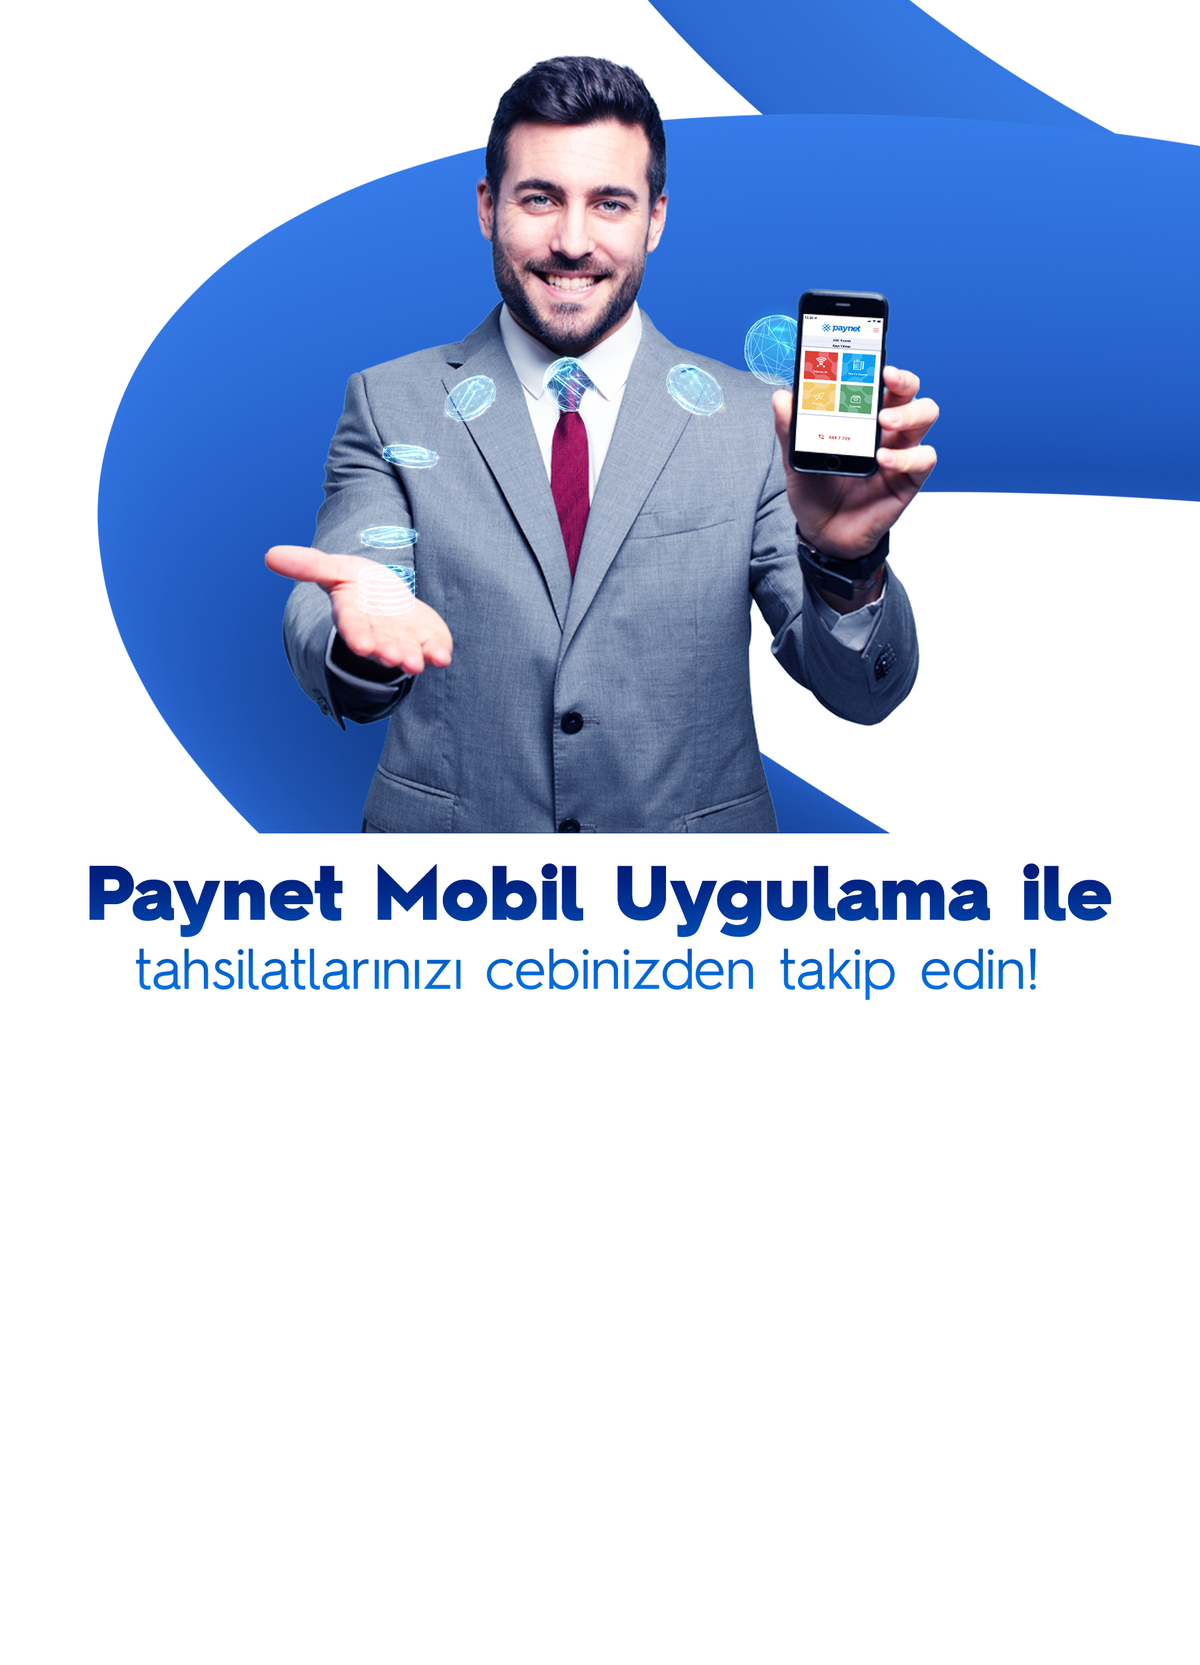 Paynet Mobil Uygulama ile Tahsilatlarınızı Cebinizden Takip Edin!